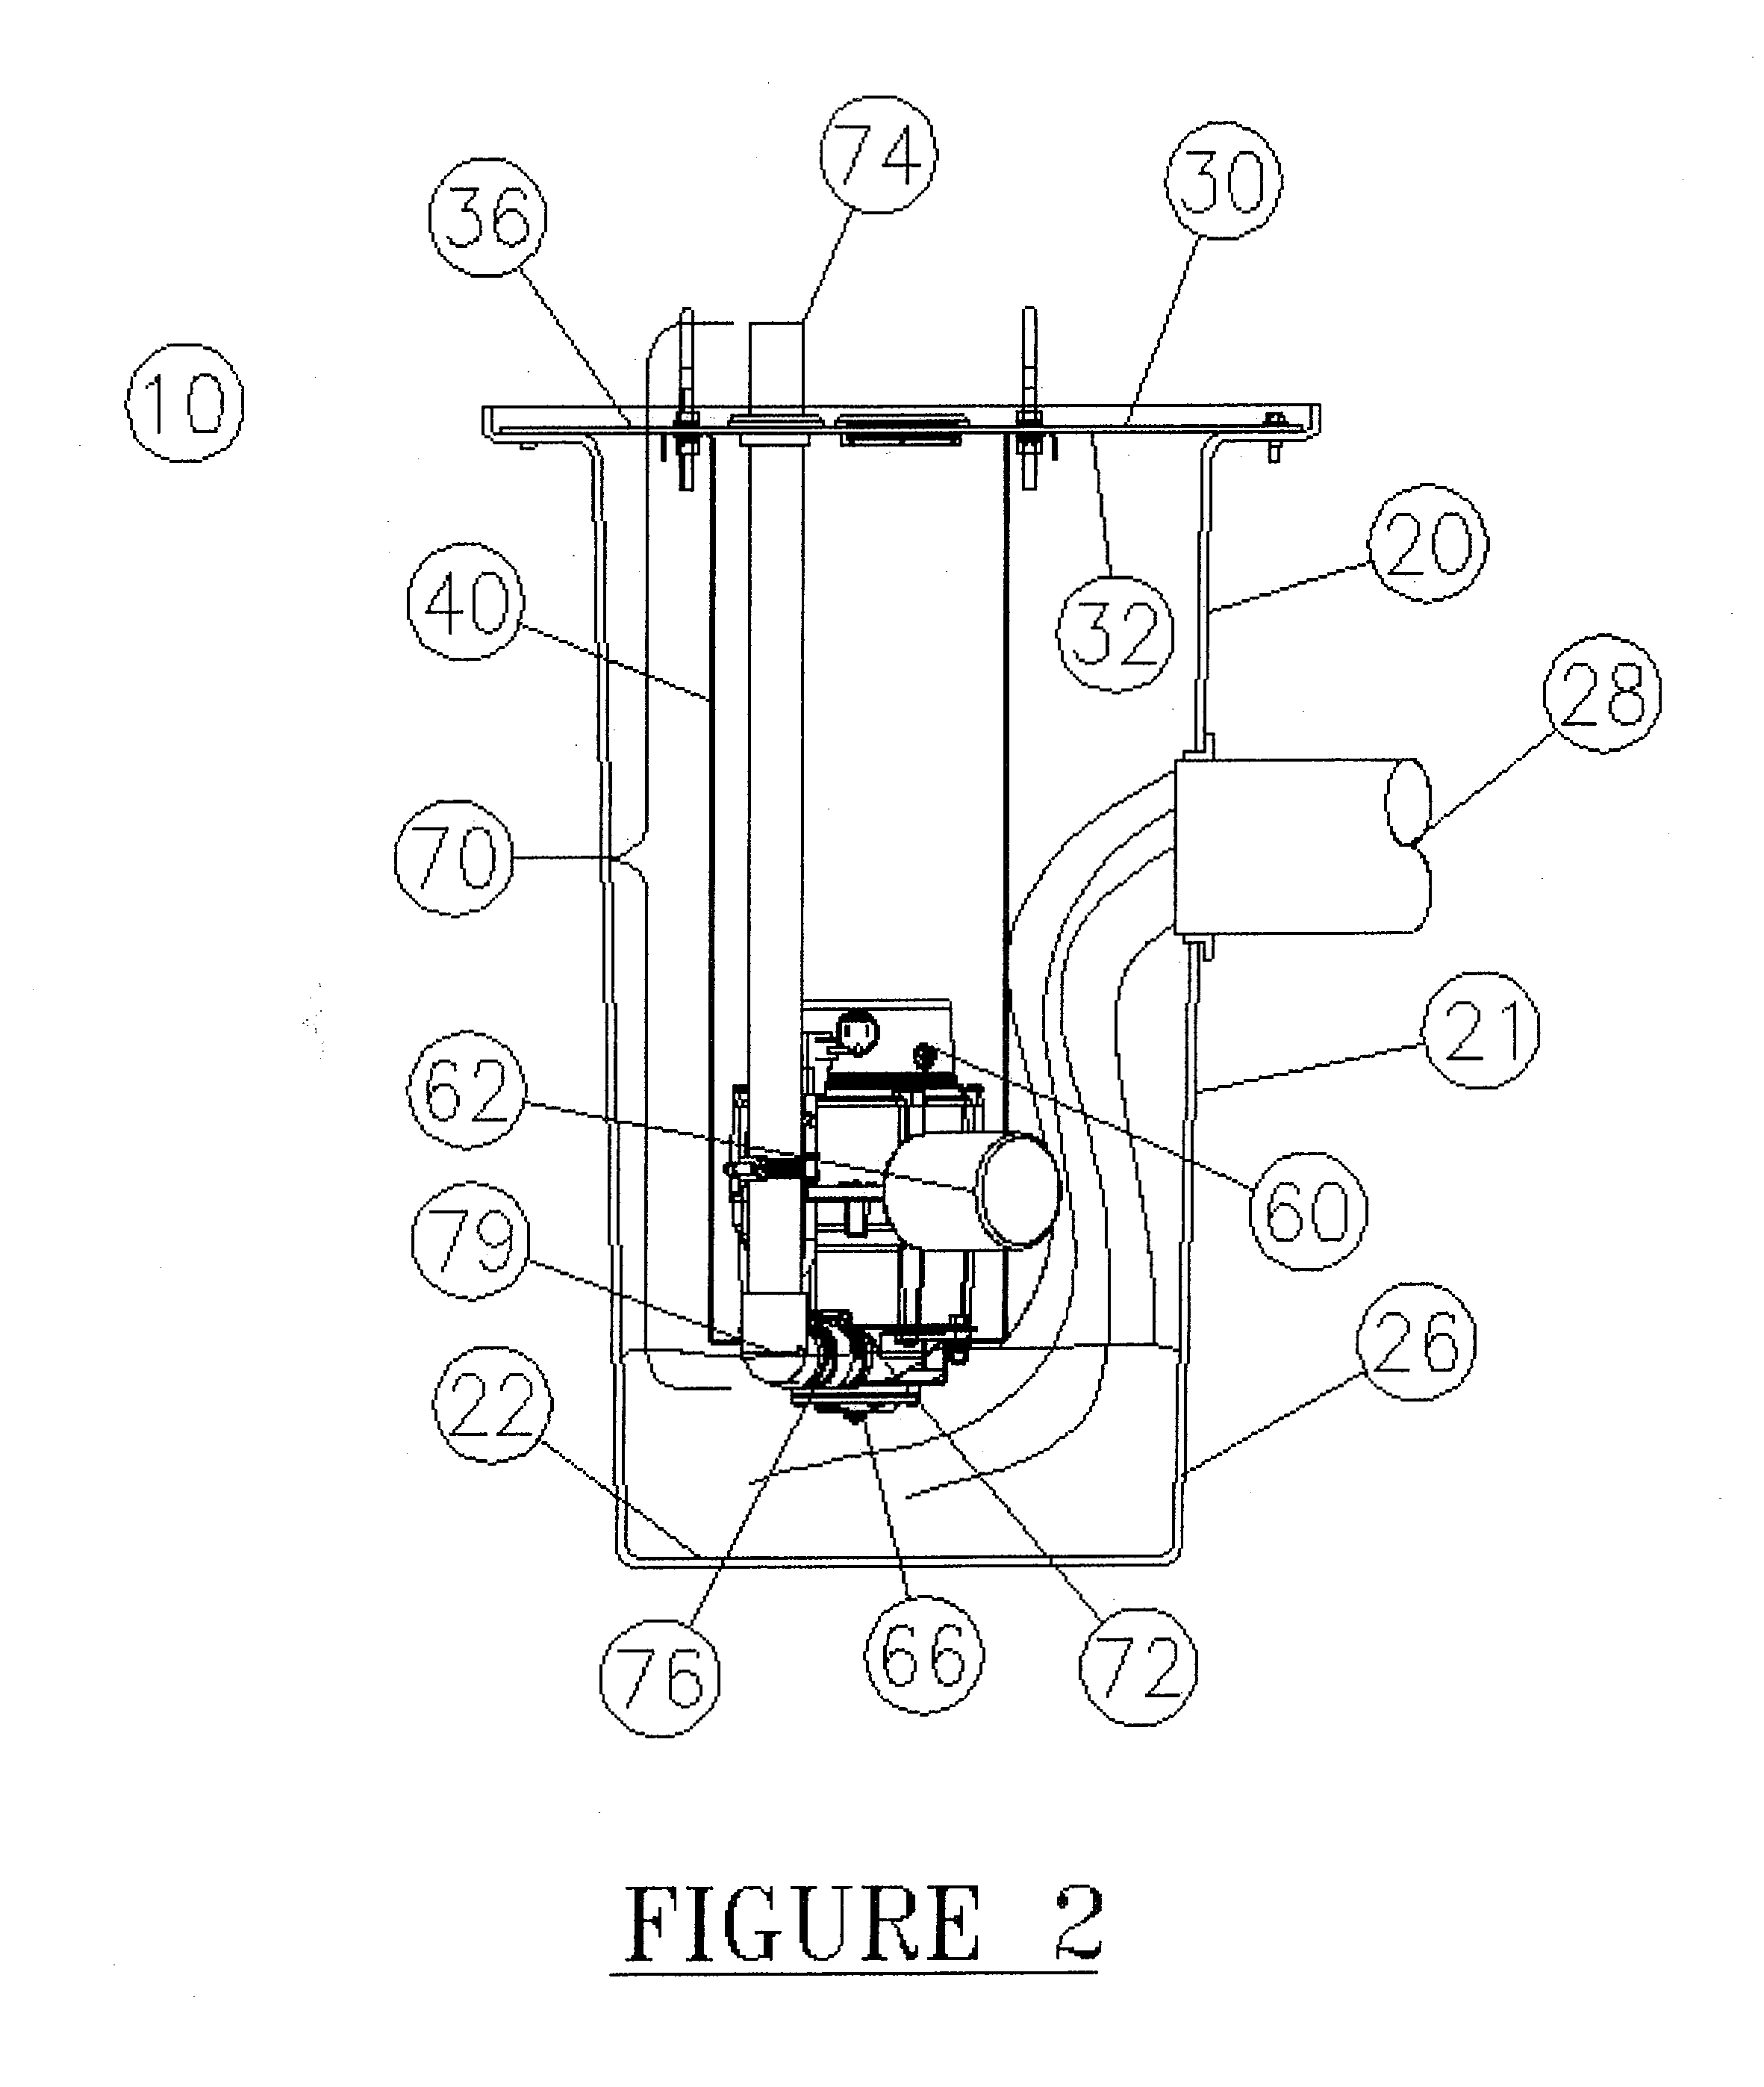 Grinder pump basin system